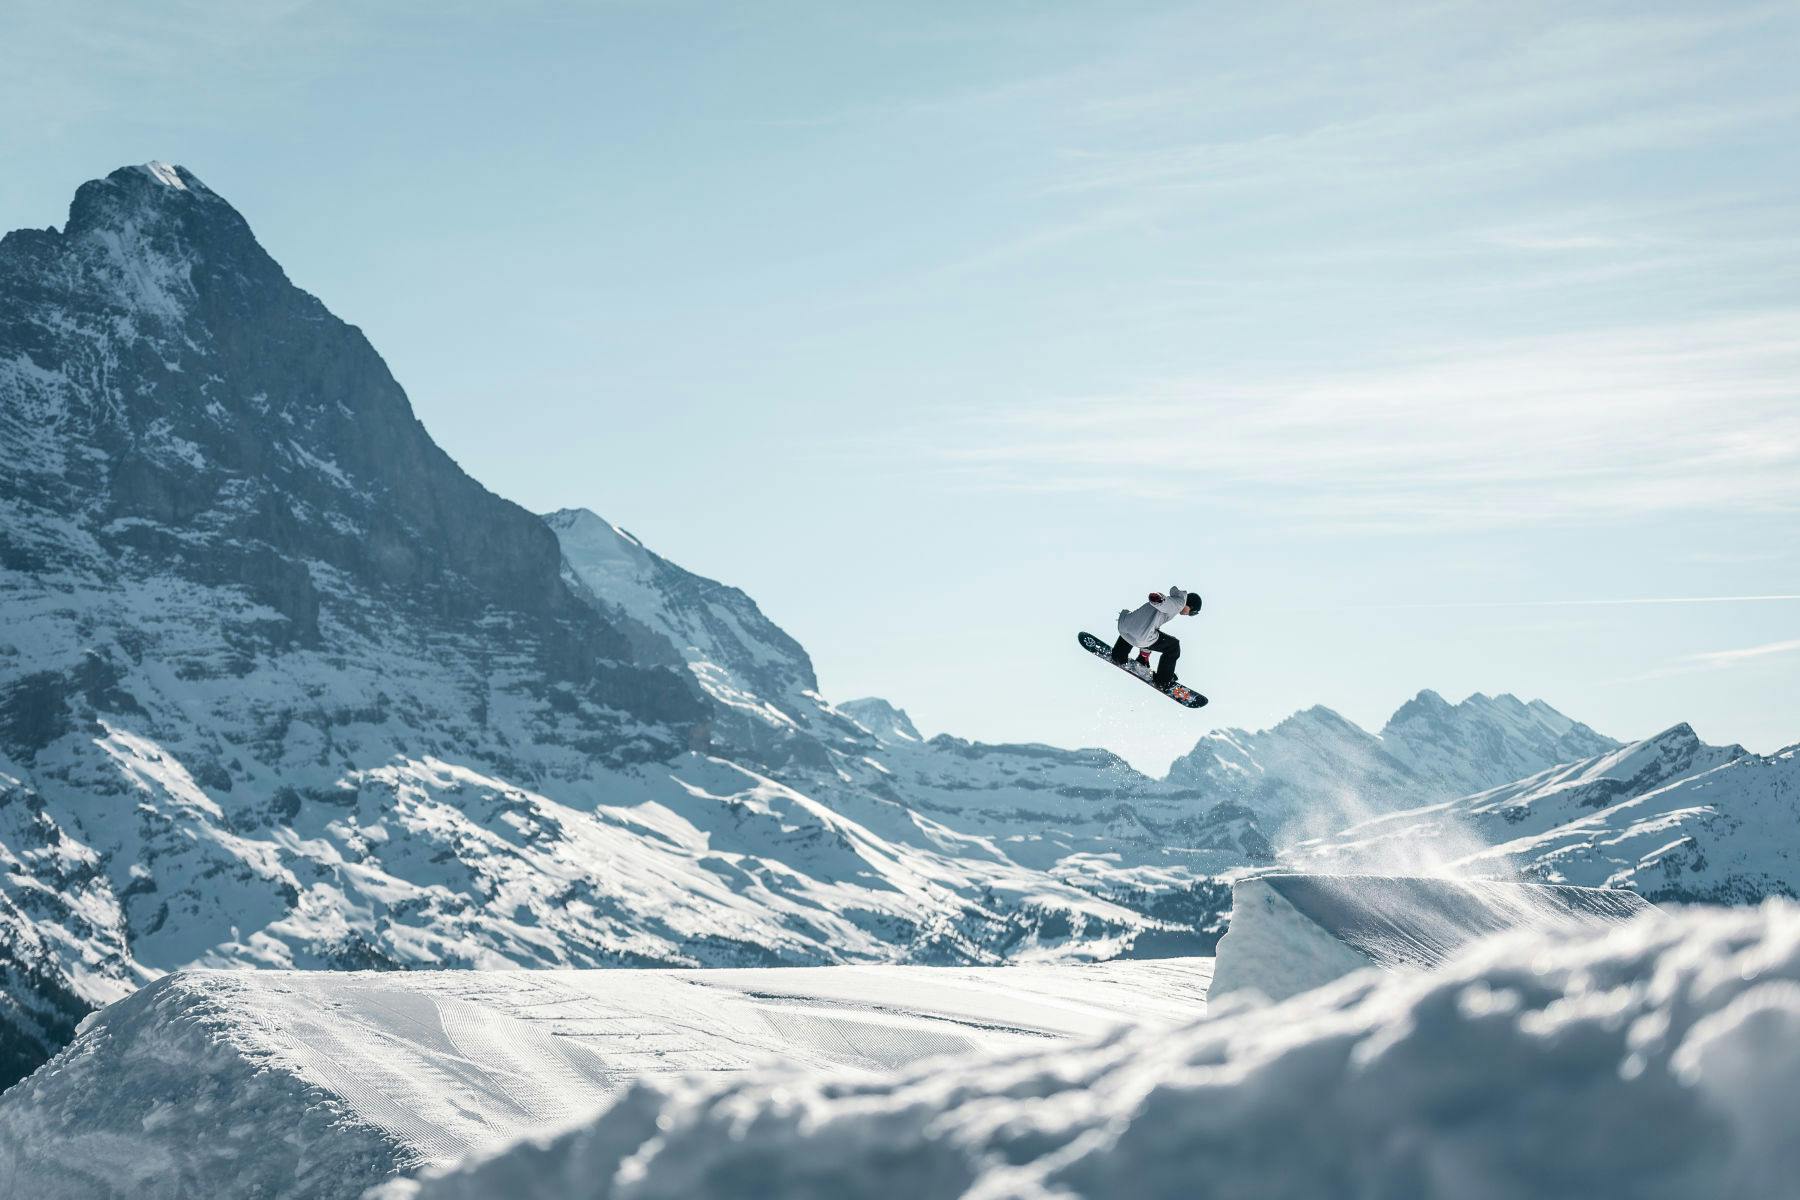 Lumilautailija hyppäämässä hyppyristä. Taustalla vuoristo.